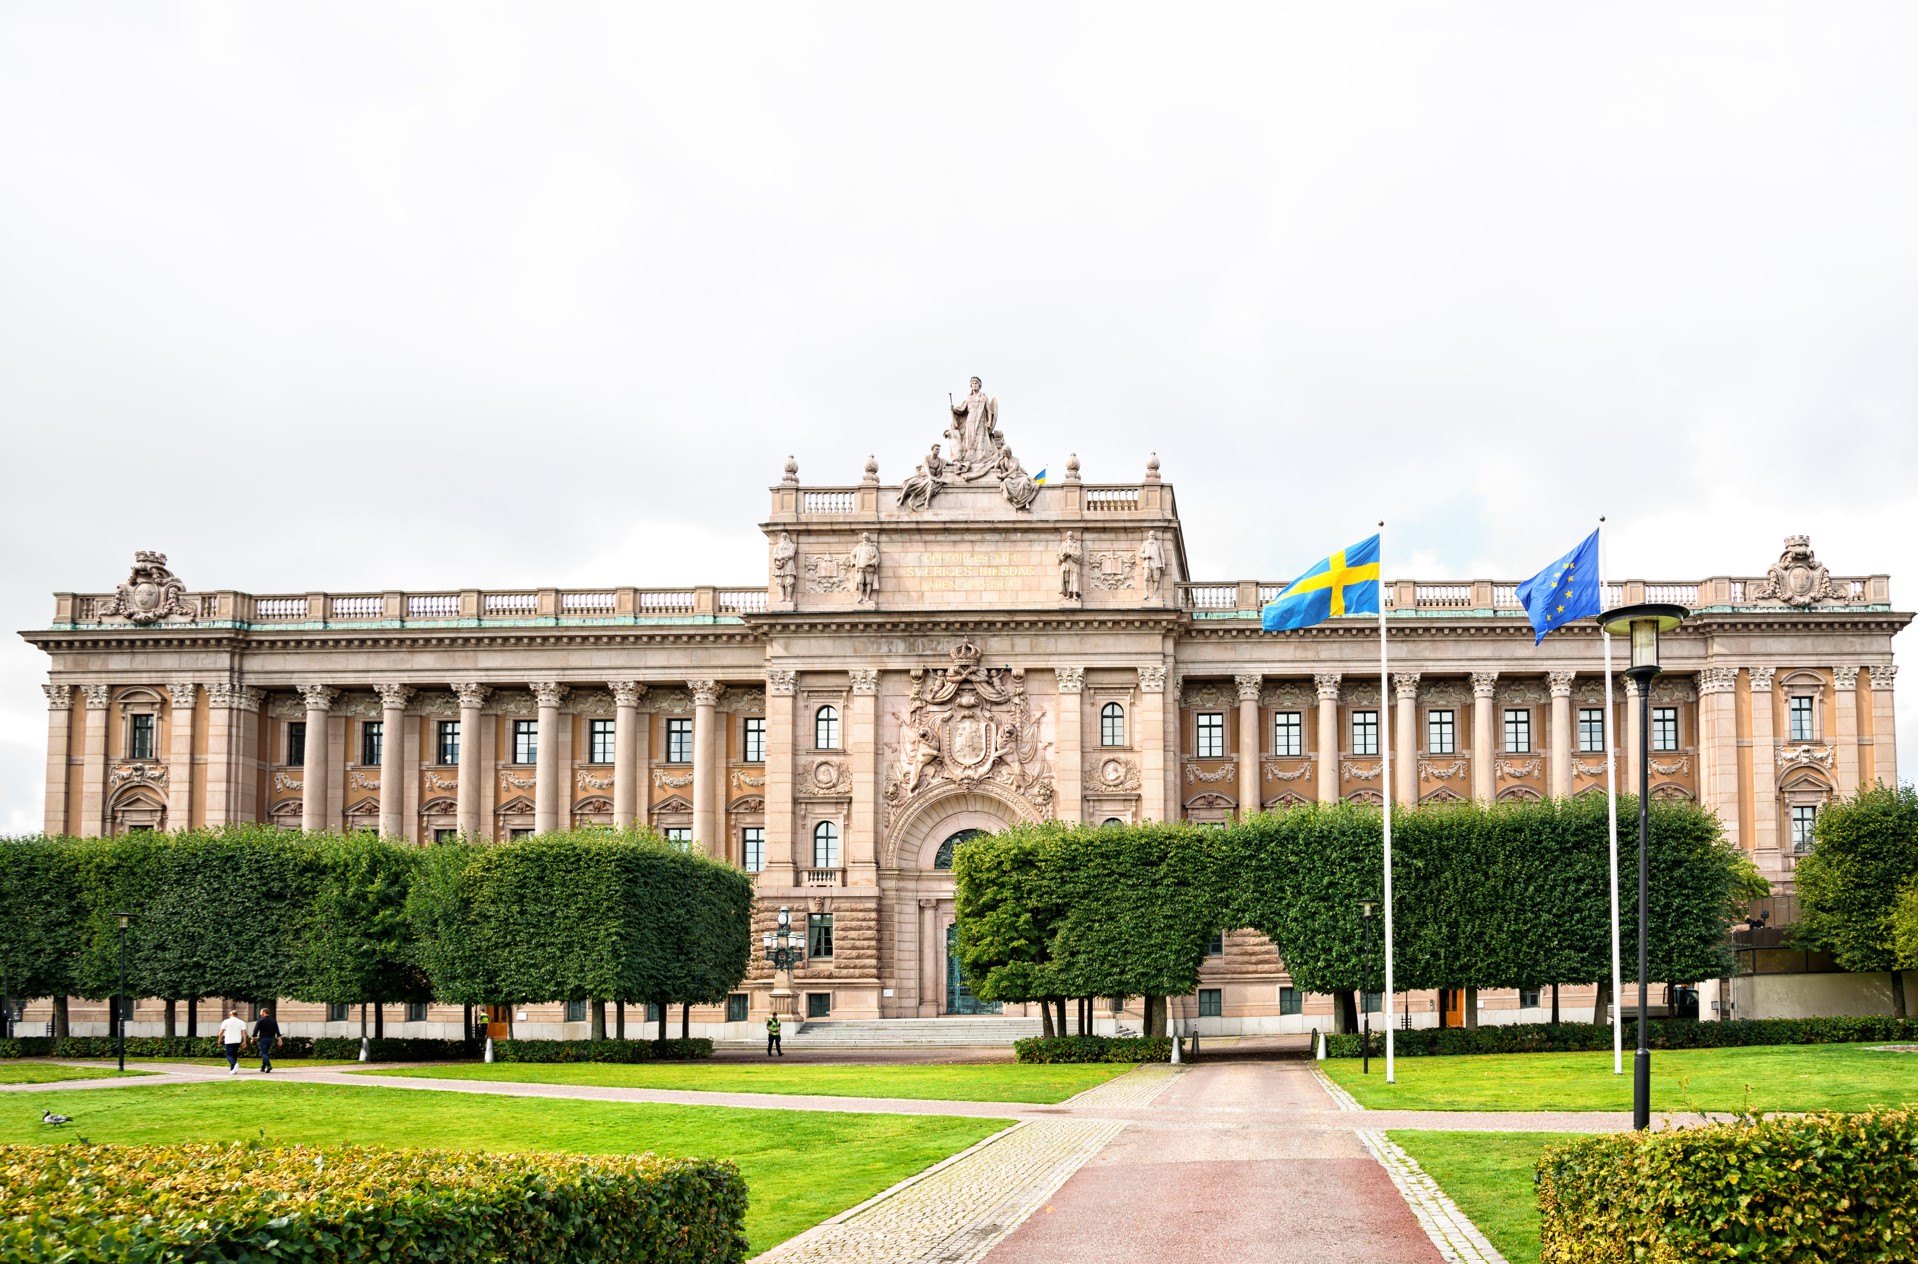 Budynek szwedzkiego parlamentu Riksdag. Fot. Freepik